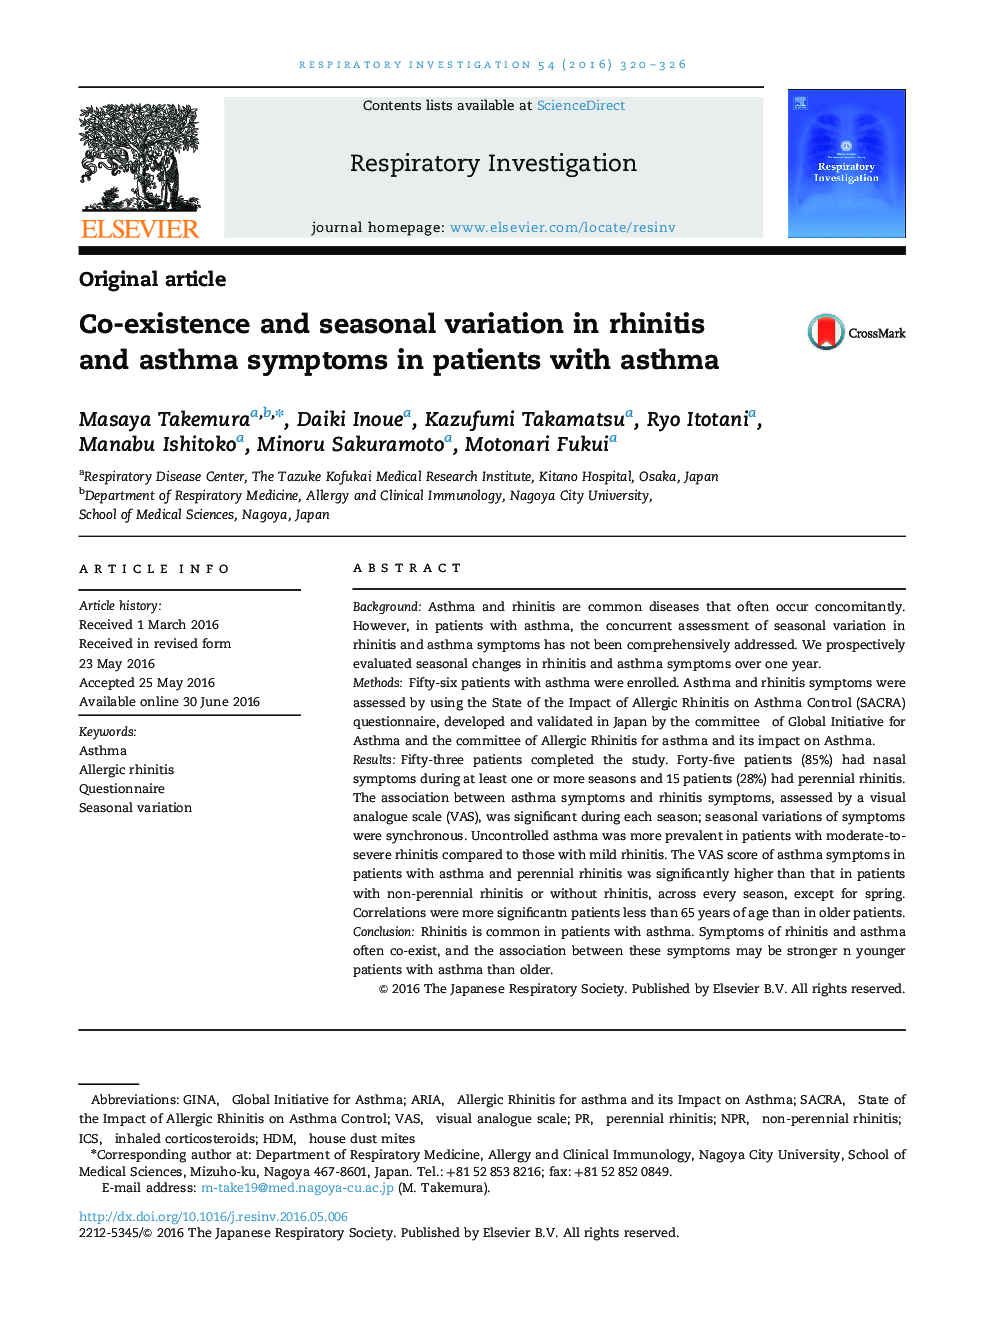 همزیستی و تغییرات فصلی در علائم رینیت و آسم در بیماران مبتلا به آسم